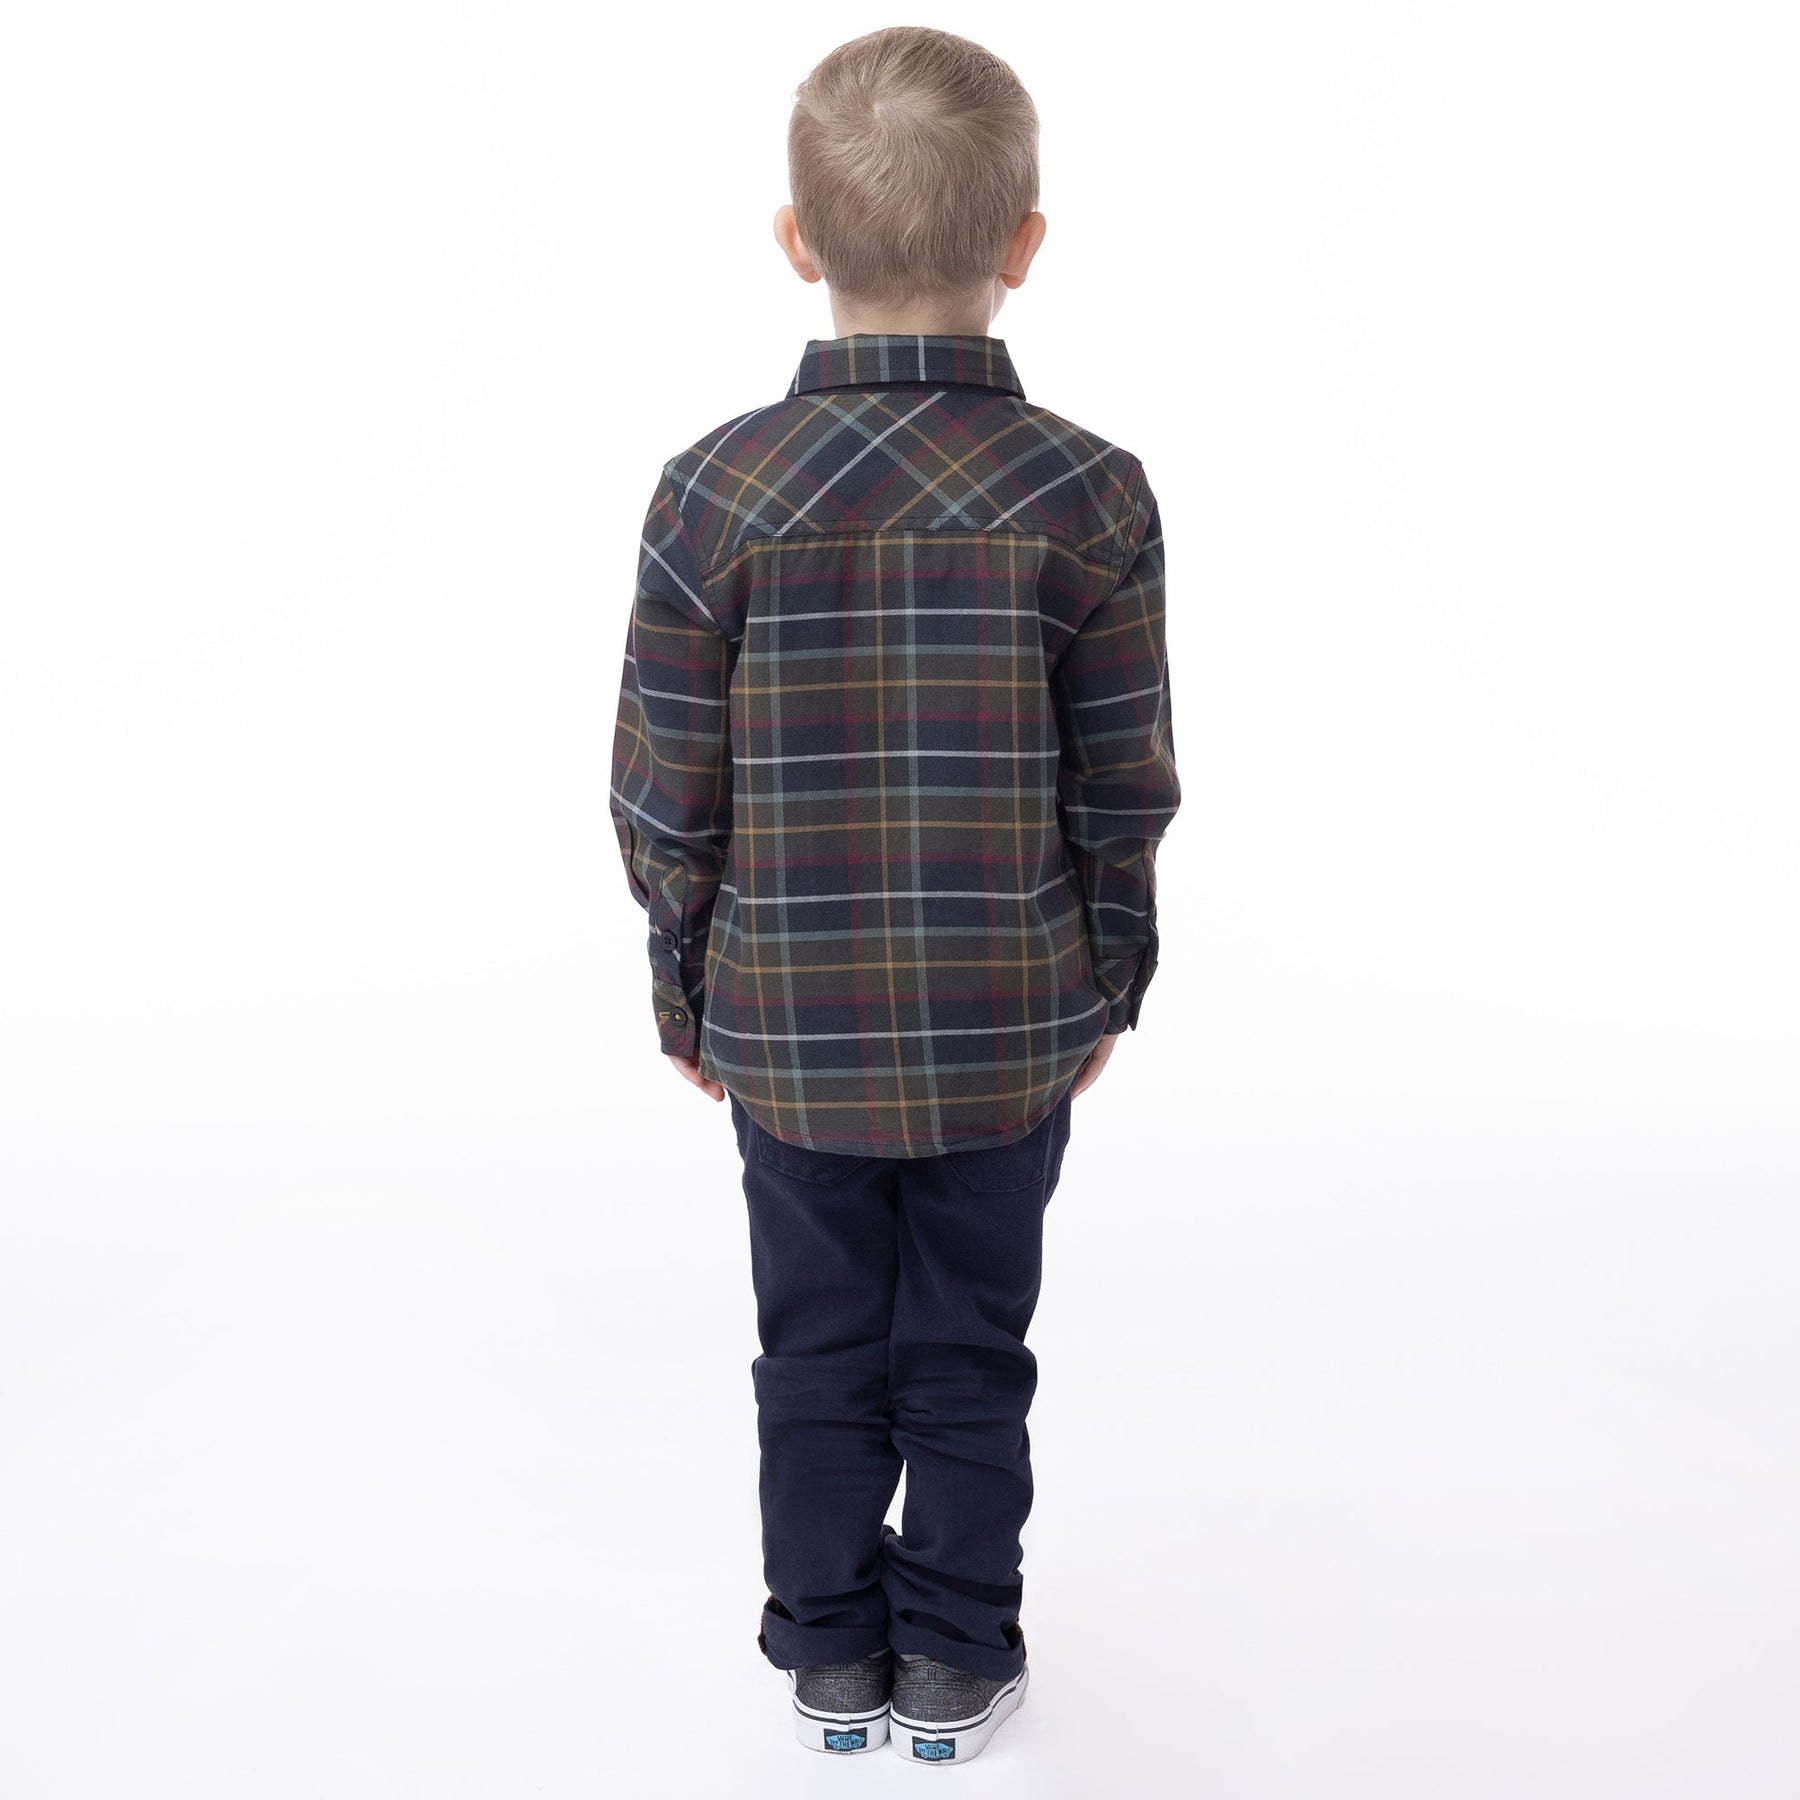 Chemise manches longues pour enfant garçon par Nanö | F2307-01 Olive | Boutique Flos, vêtements mode pour bébés et enfants